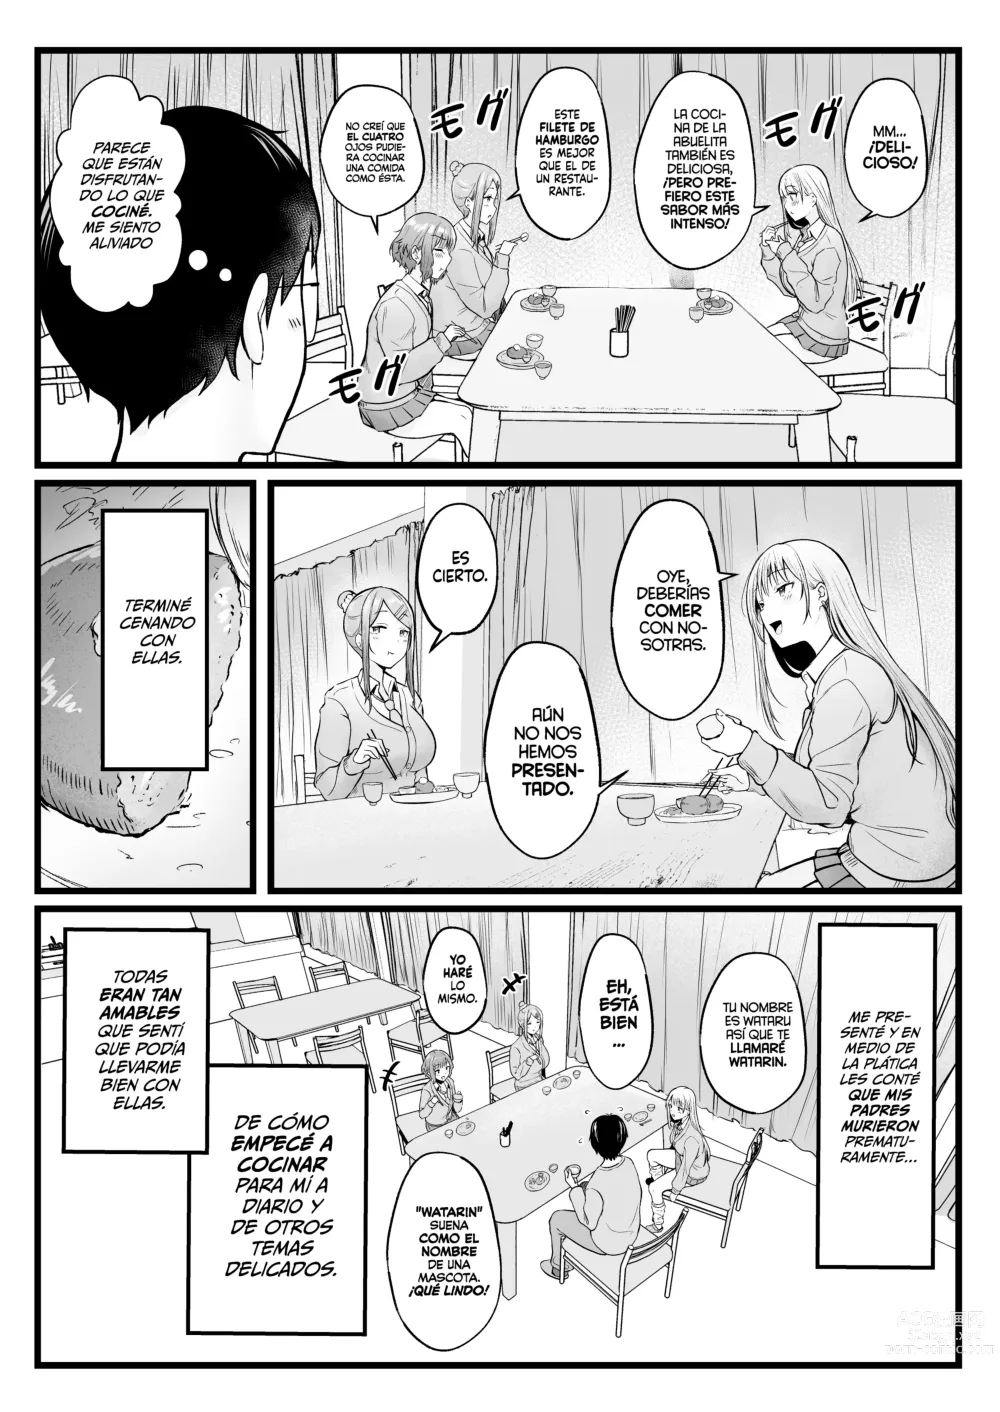 Page 9 of doujinshi Soy el Administrador del Dormitorio de Chicas, Siendo Manipulado por las Chicas que Viven Ahí.